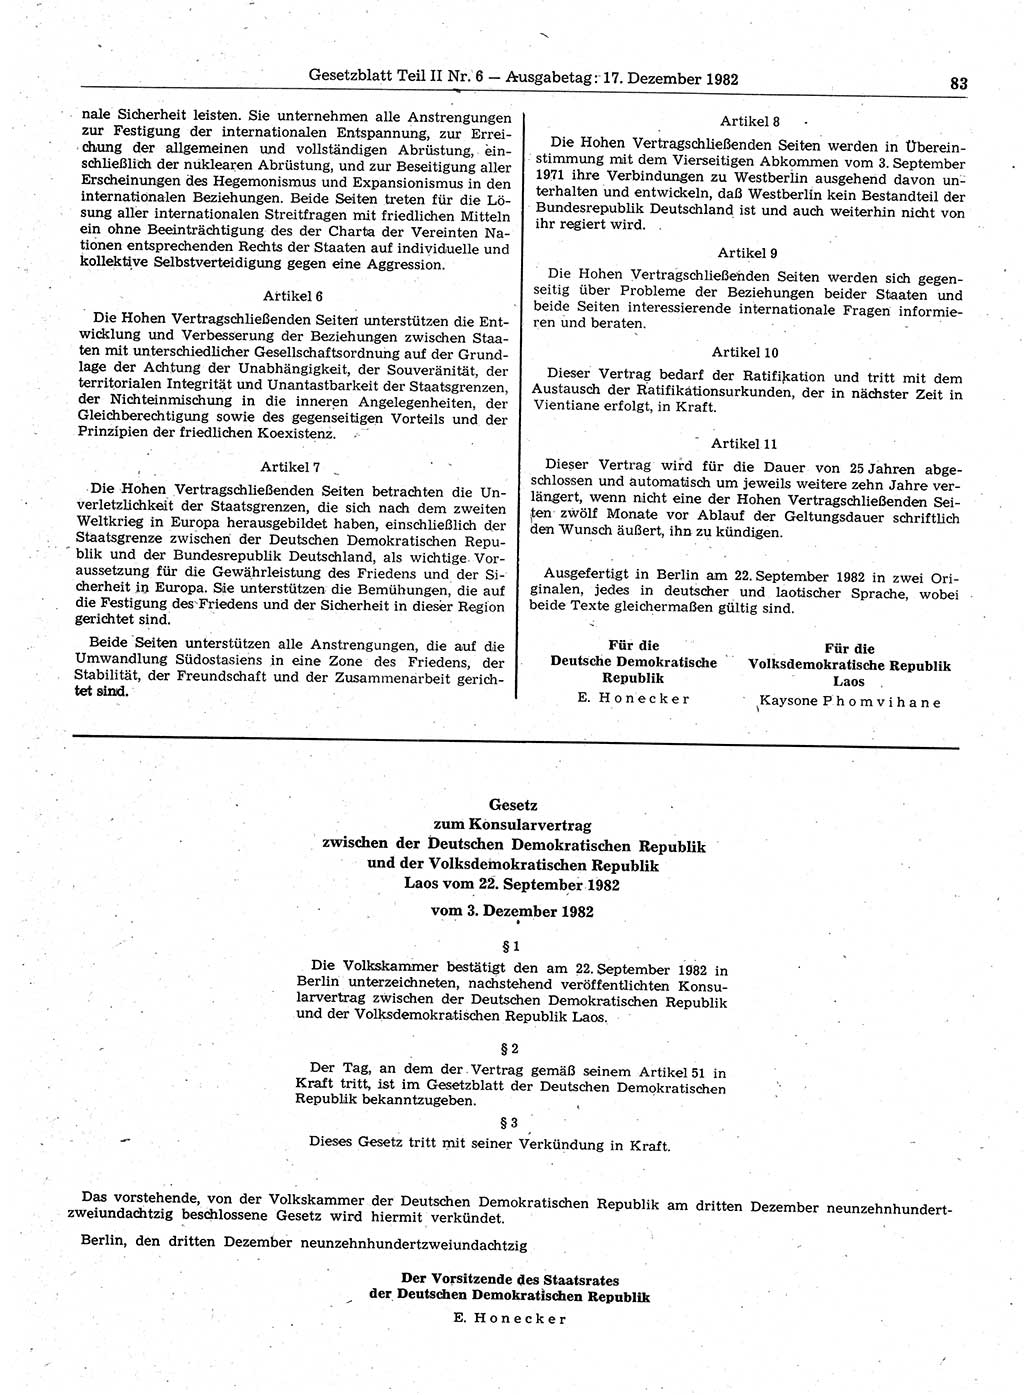 Gesetzblatt (GBl.) der Deutschen Demokratischen Republik (DDR) Teil ⅠⅠ 1982, Seite 83 (GBl. DDR ⅠⅠ 1982, S. 83)